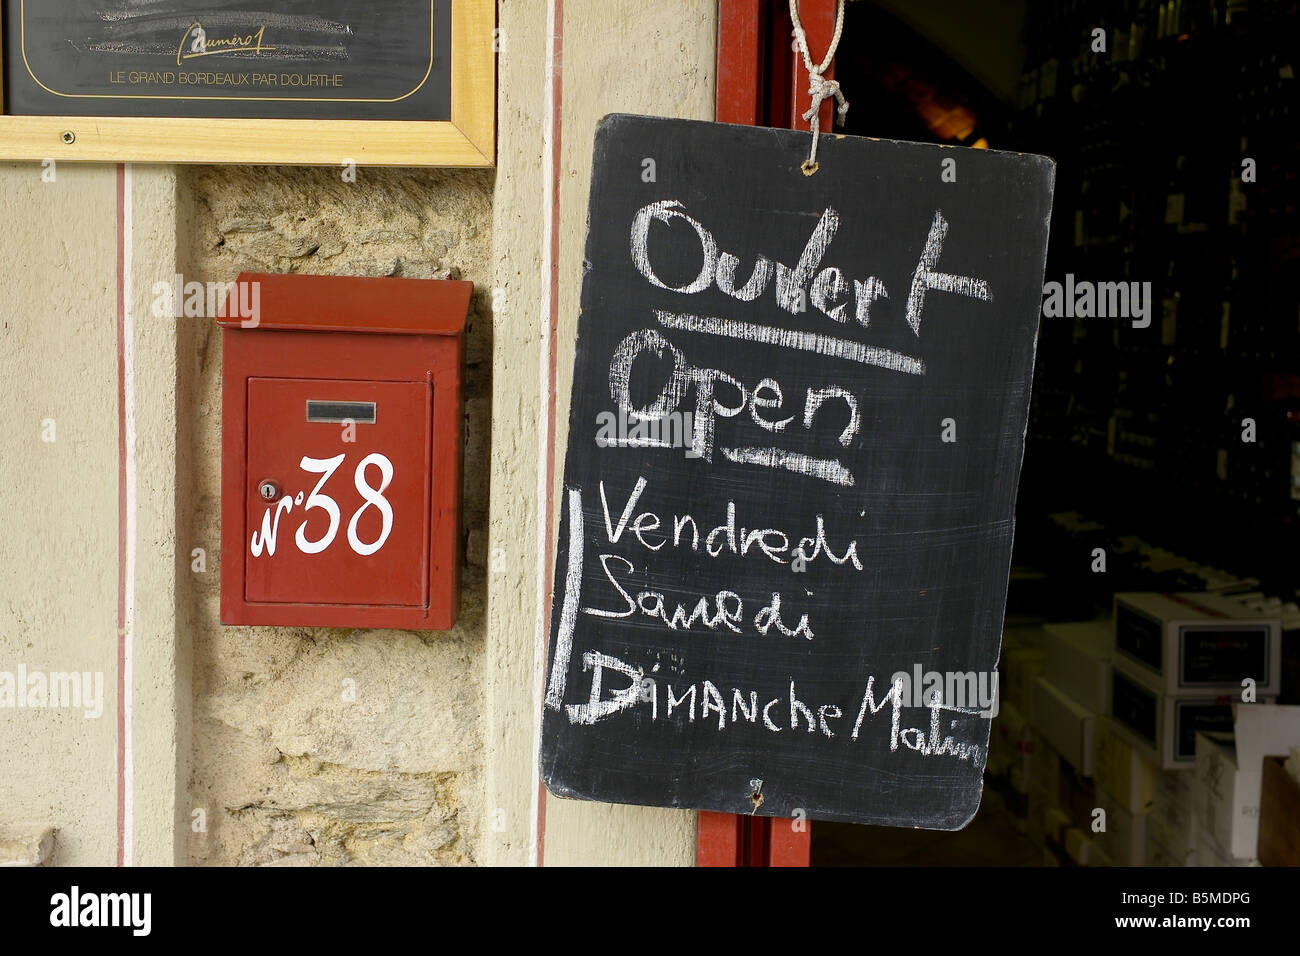 Französisch, Shop, Öffnungszeiten, Briefkasten Stockfotografie - Alamy